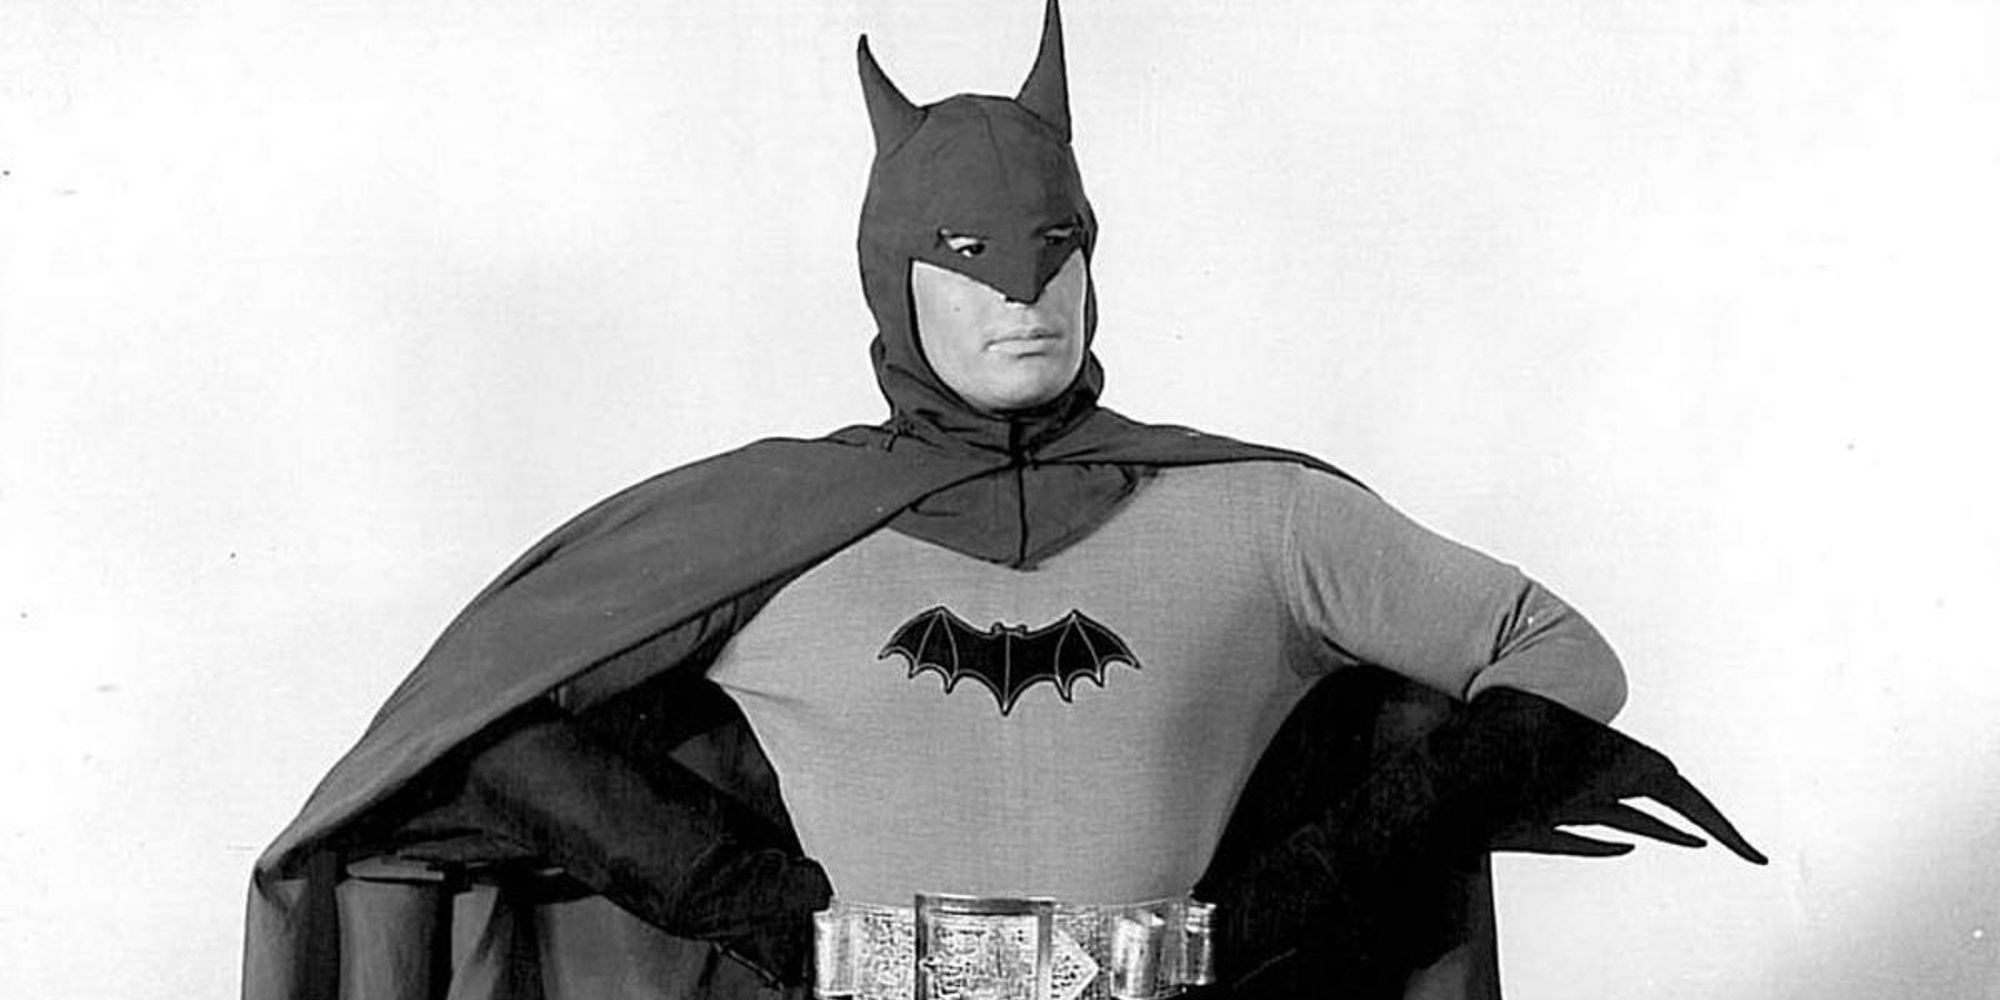 Lewis Wilson as Batman posing heroically in the 1943 serials